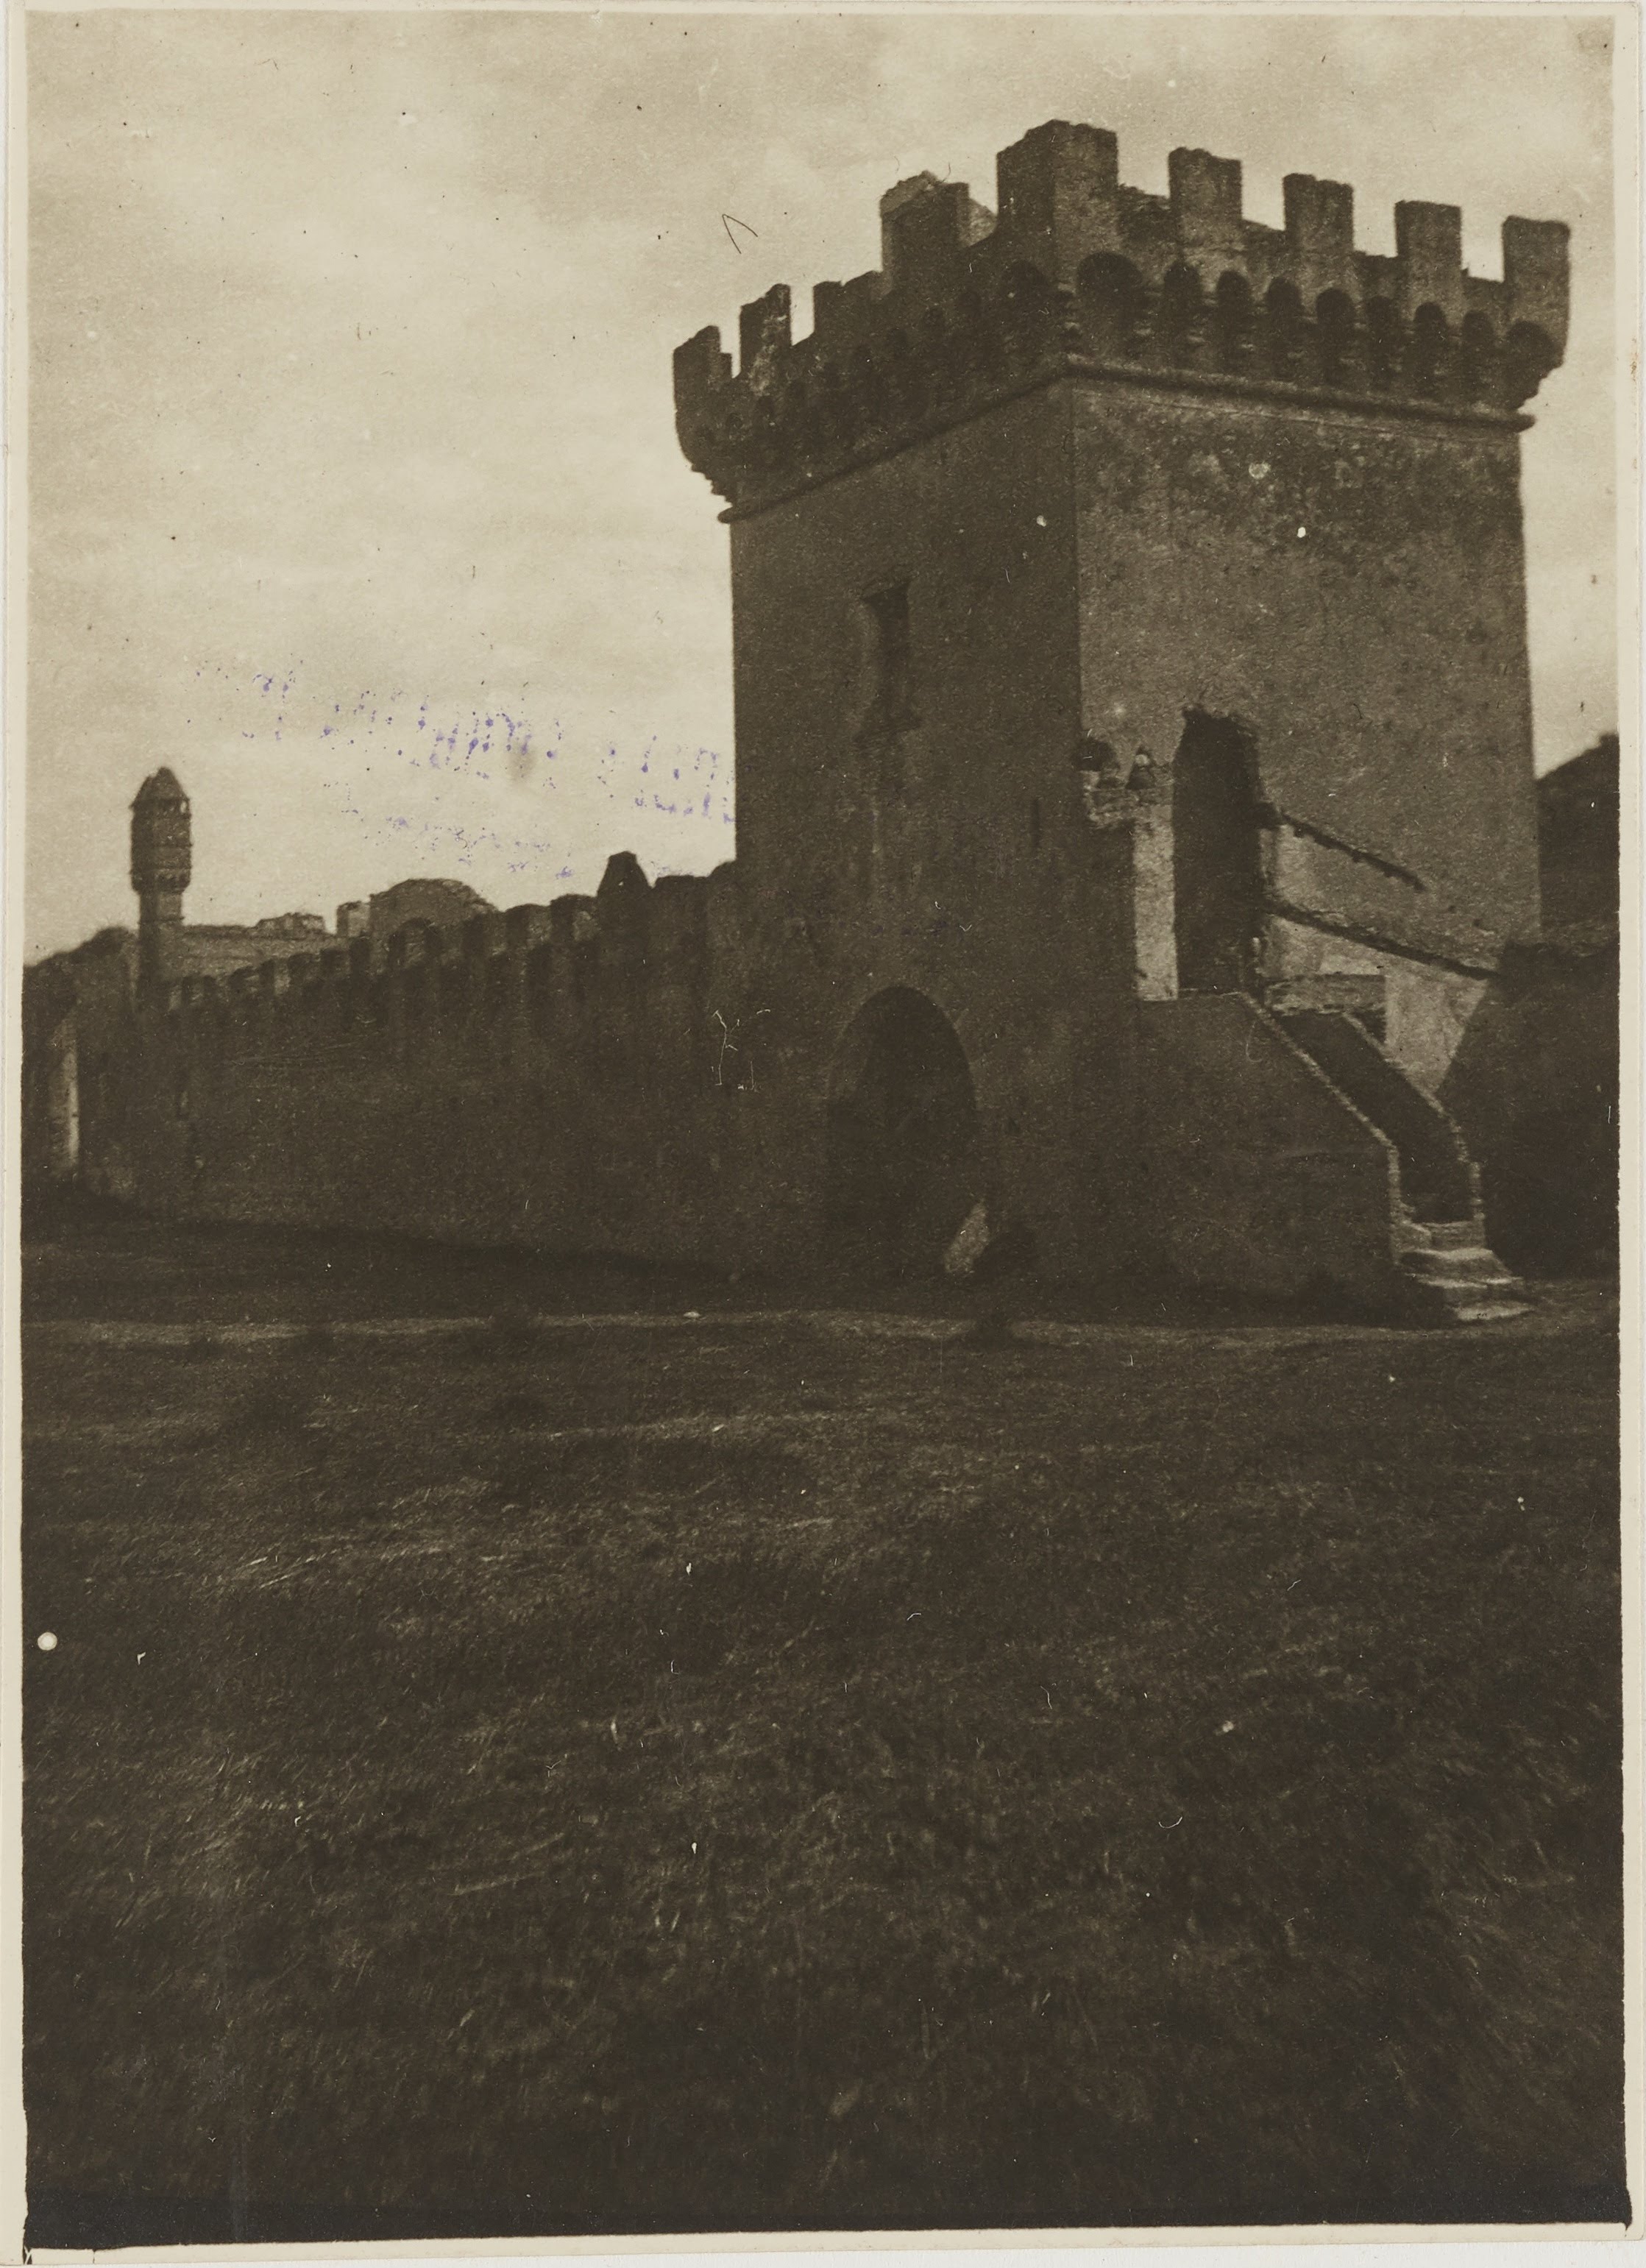 Autore non identificato, Corigliano Calabro, Cantinella - Castello di S. Mauro, gelatina ai sali d'argento, MPI155771